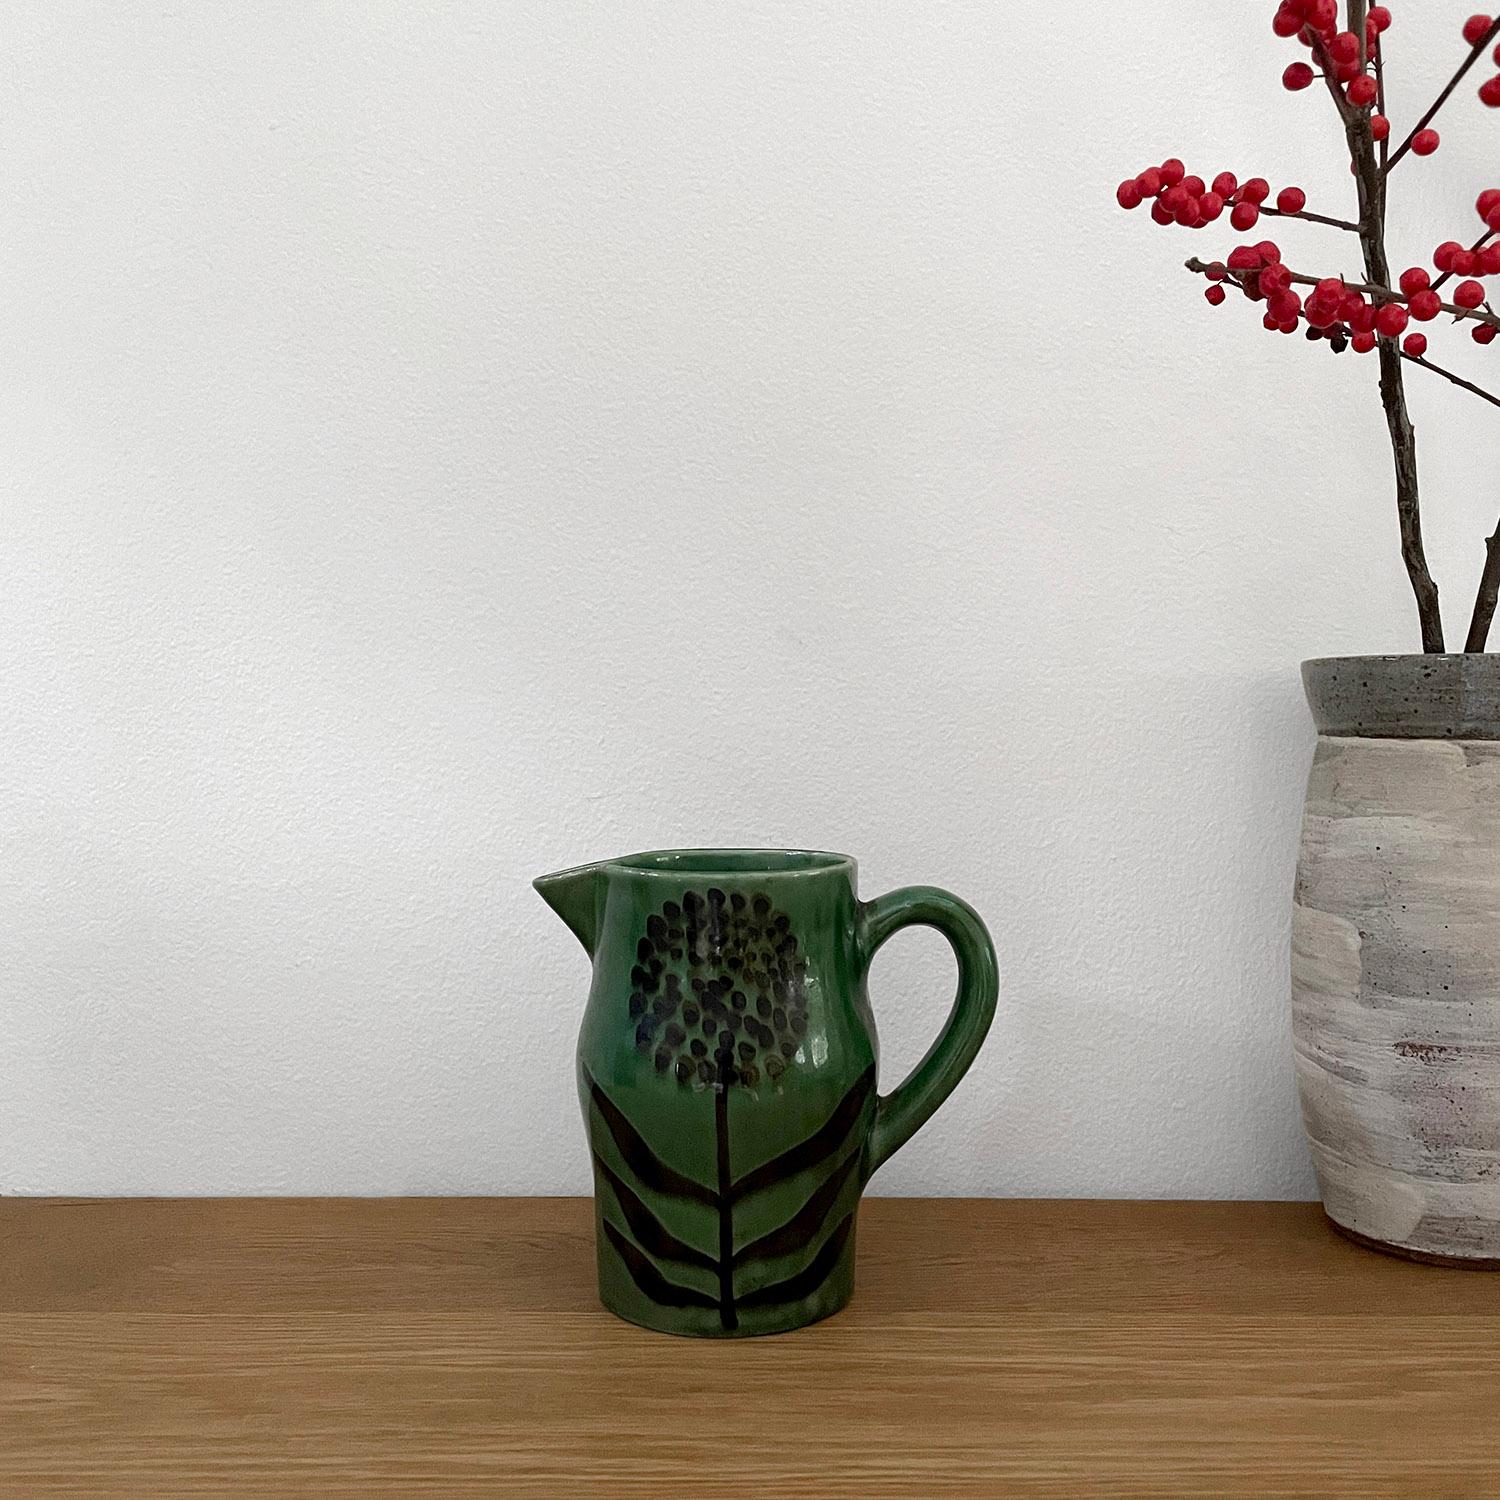 Robert Picault Französisch Keramik Krug Vase 
Frankreich, ca. 1950er Jahre 
Smaragdgrüne Keramik ist mit einem organischen Blumenmotiv verziert
Dieses charmante Stück verschönert jede Arbeitsfläche 
Das Schiff wurde nicht auf seine Wasserdichtigkeit